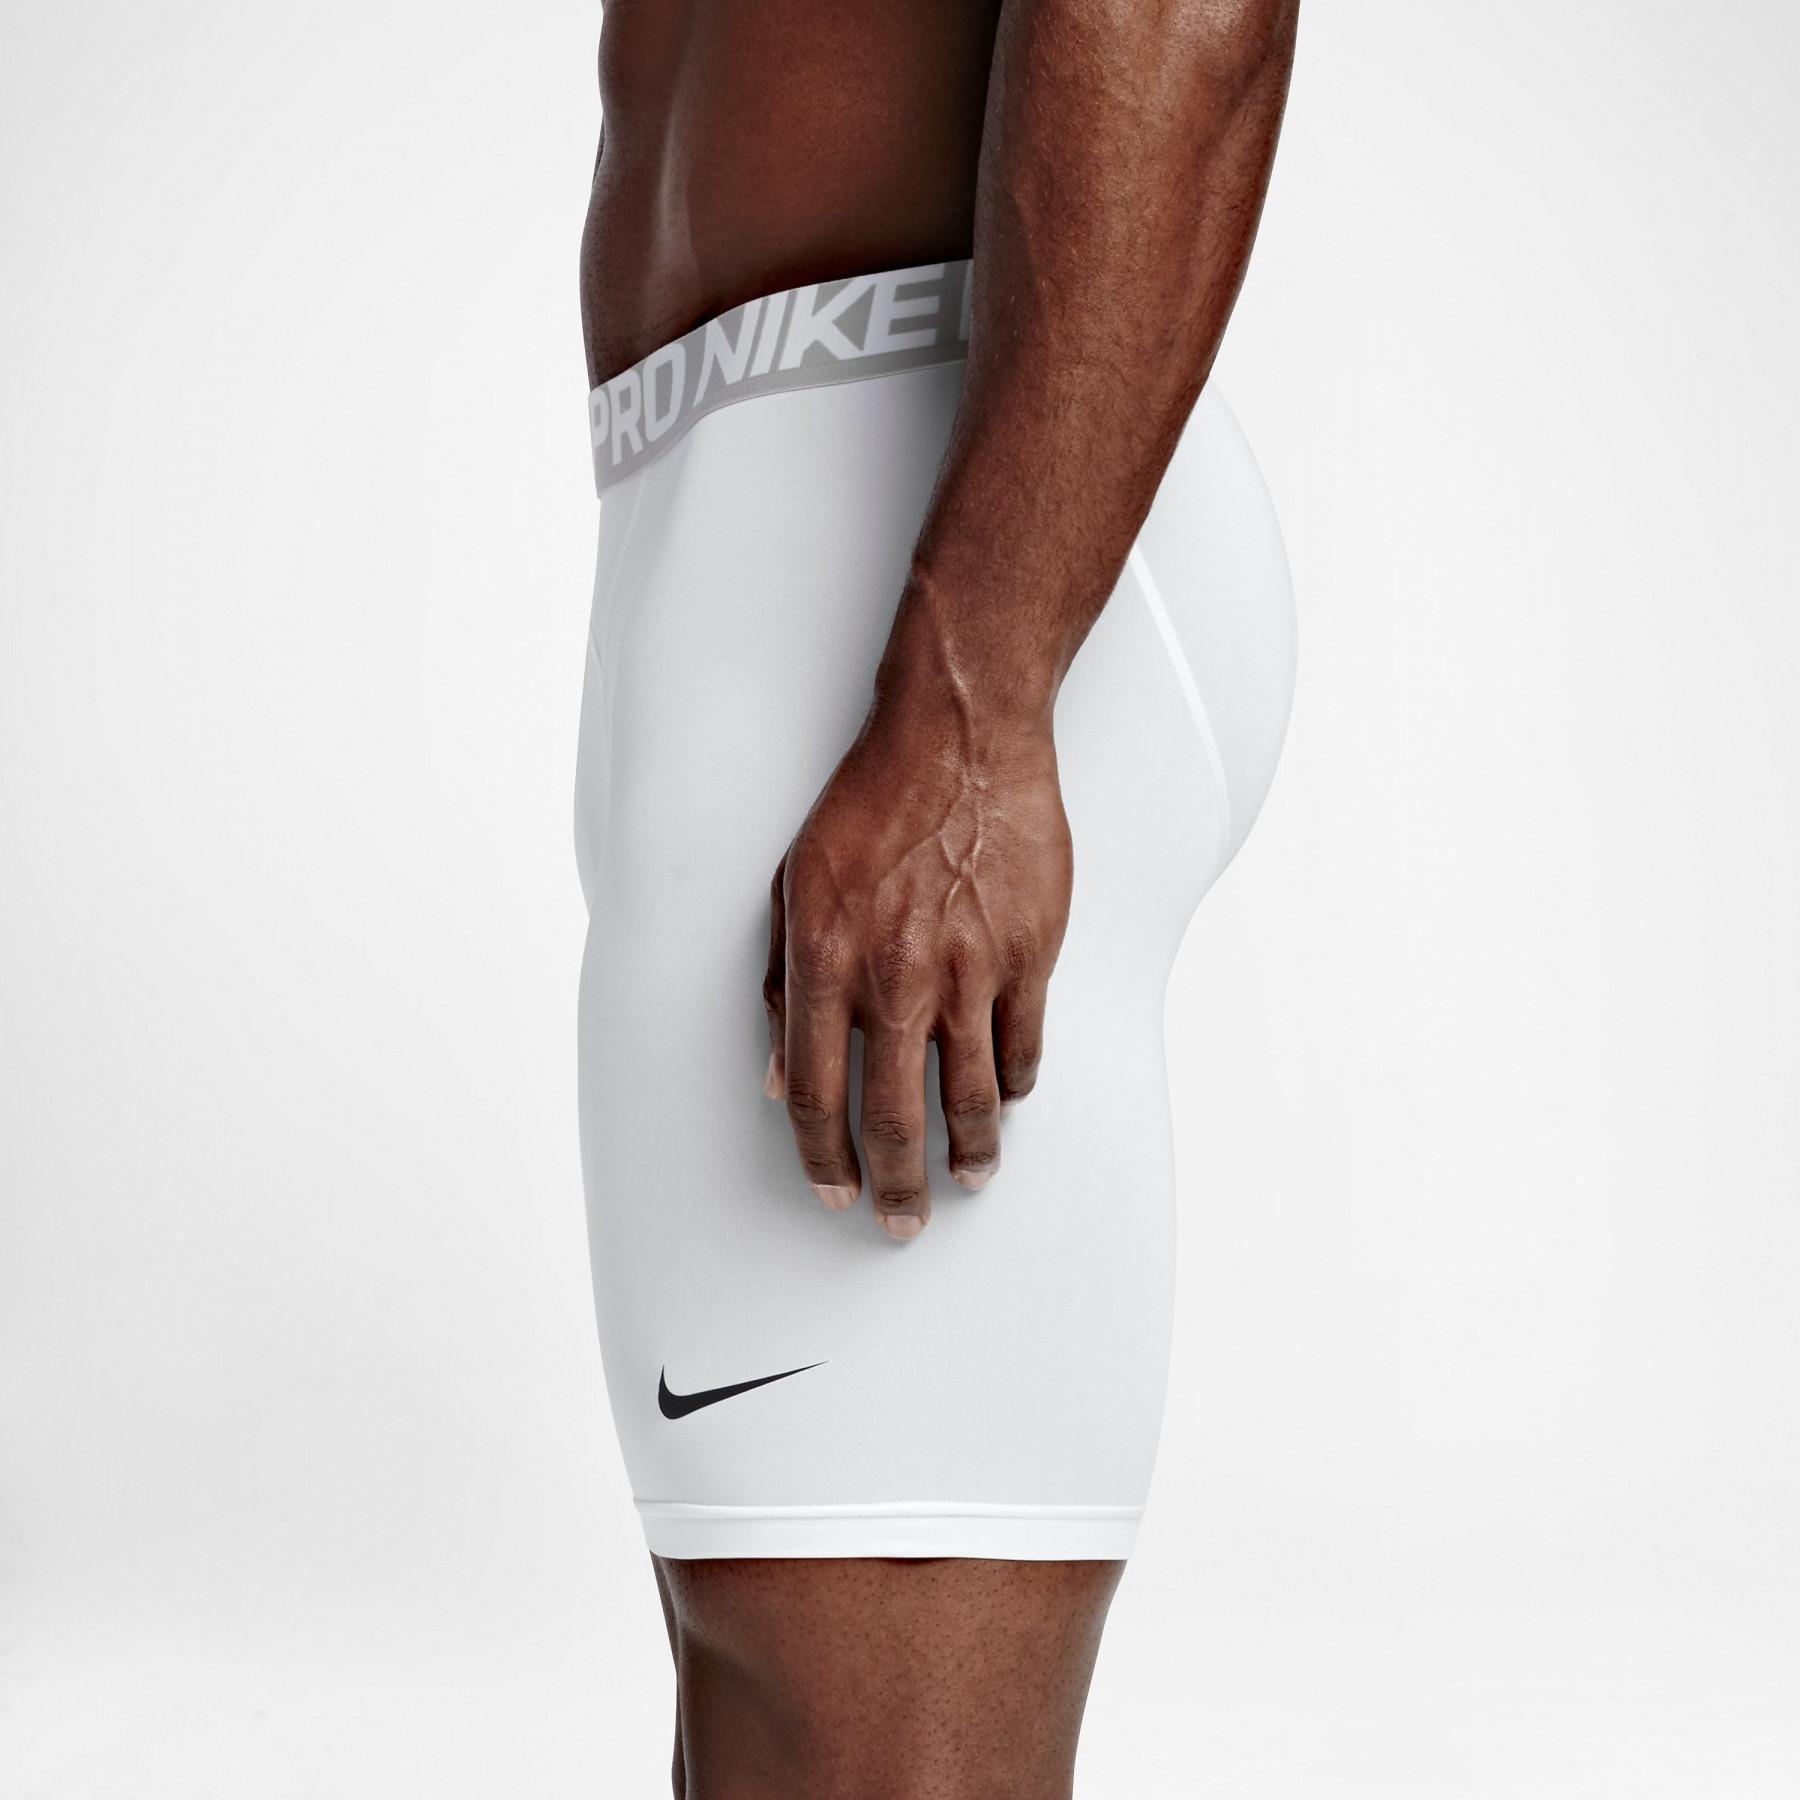 Pantalones cortos de compresión Nike Pro